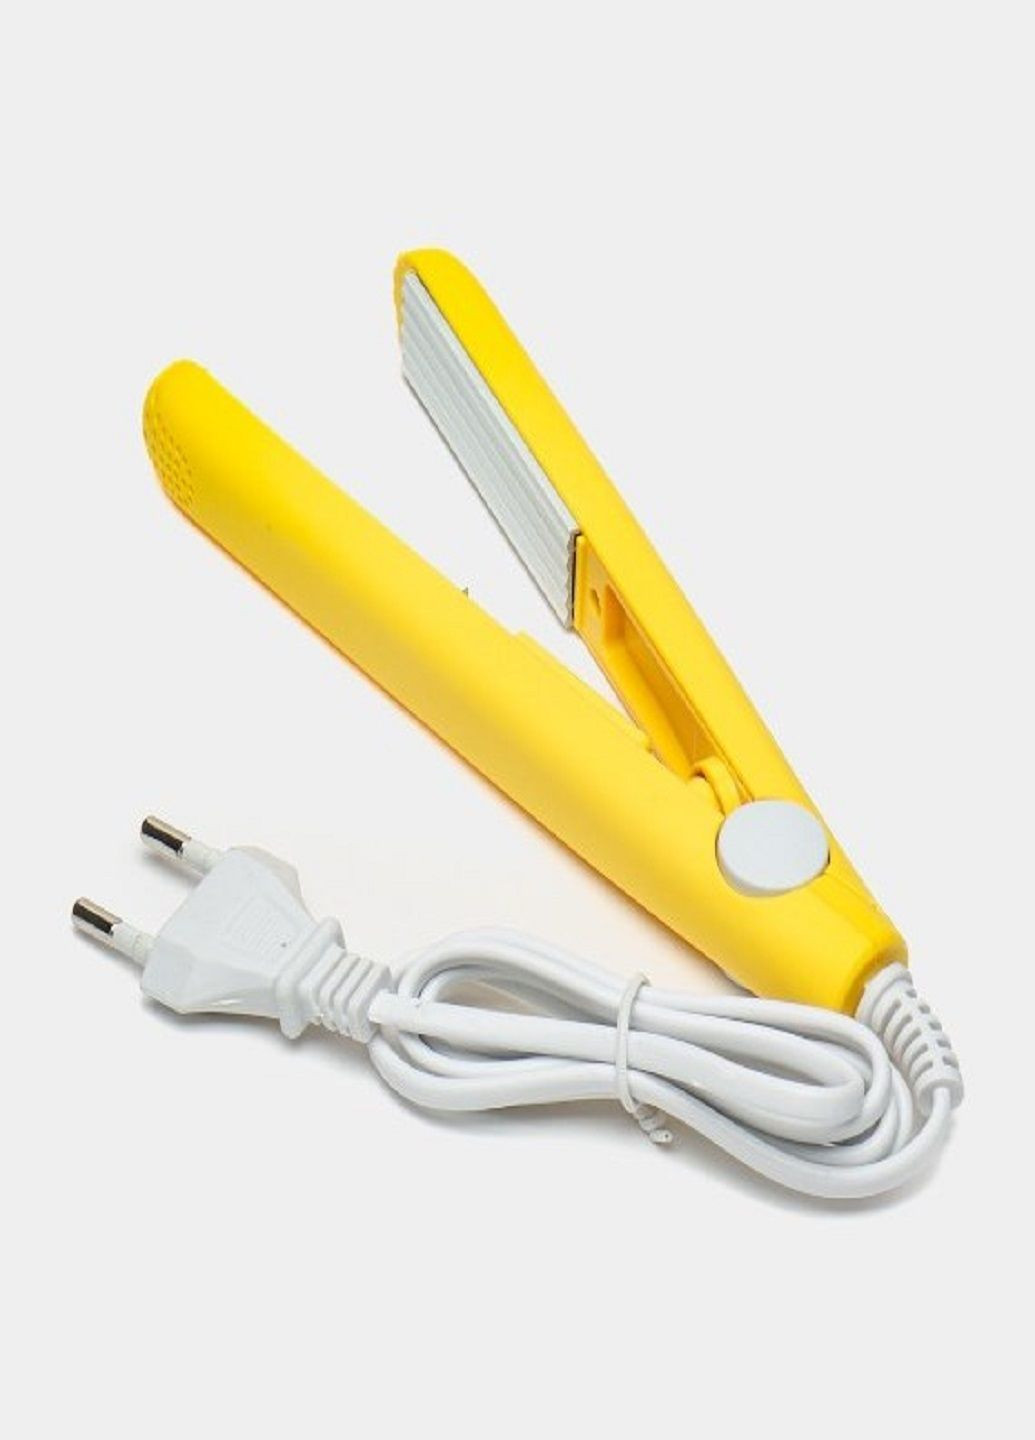 Компактна міні плойка гофре Modern GV 118 для волосся дорожня плойка жовта VTech (291018640)